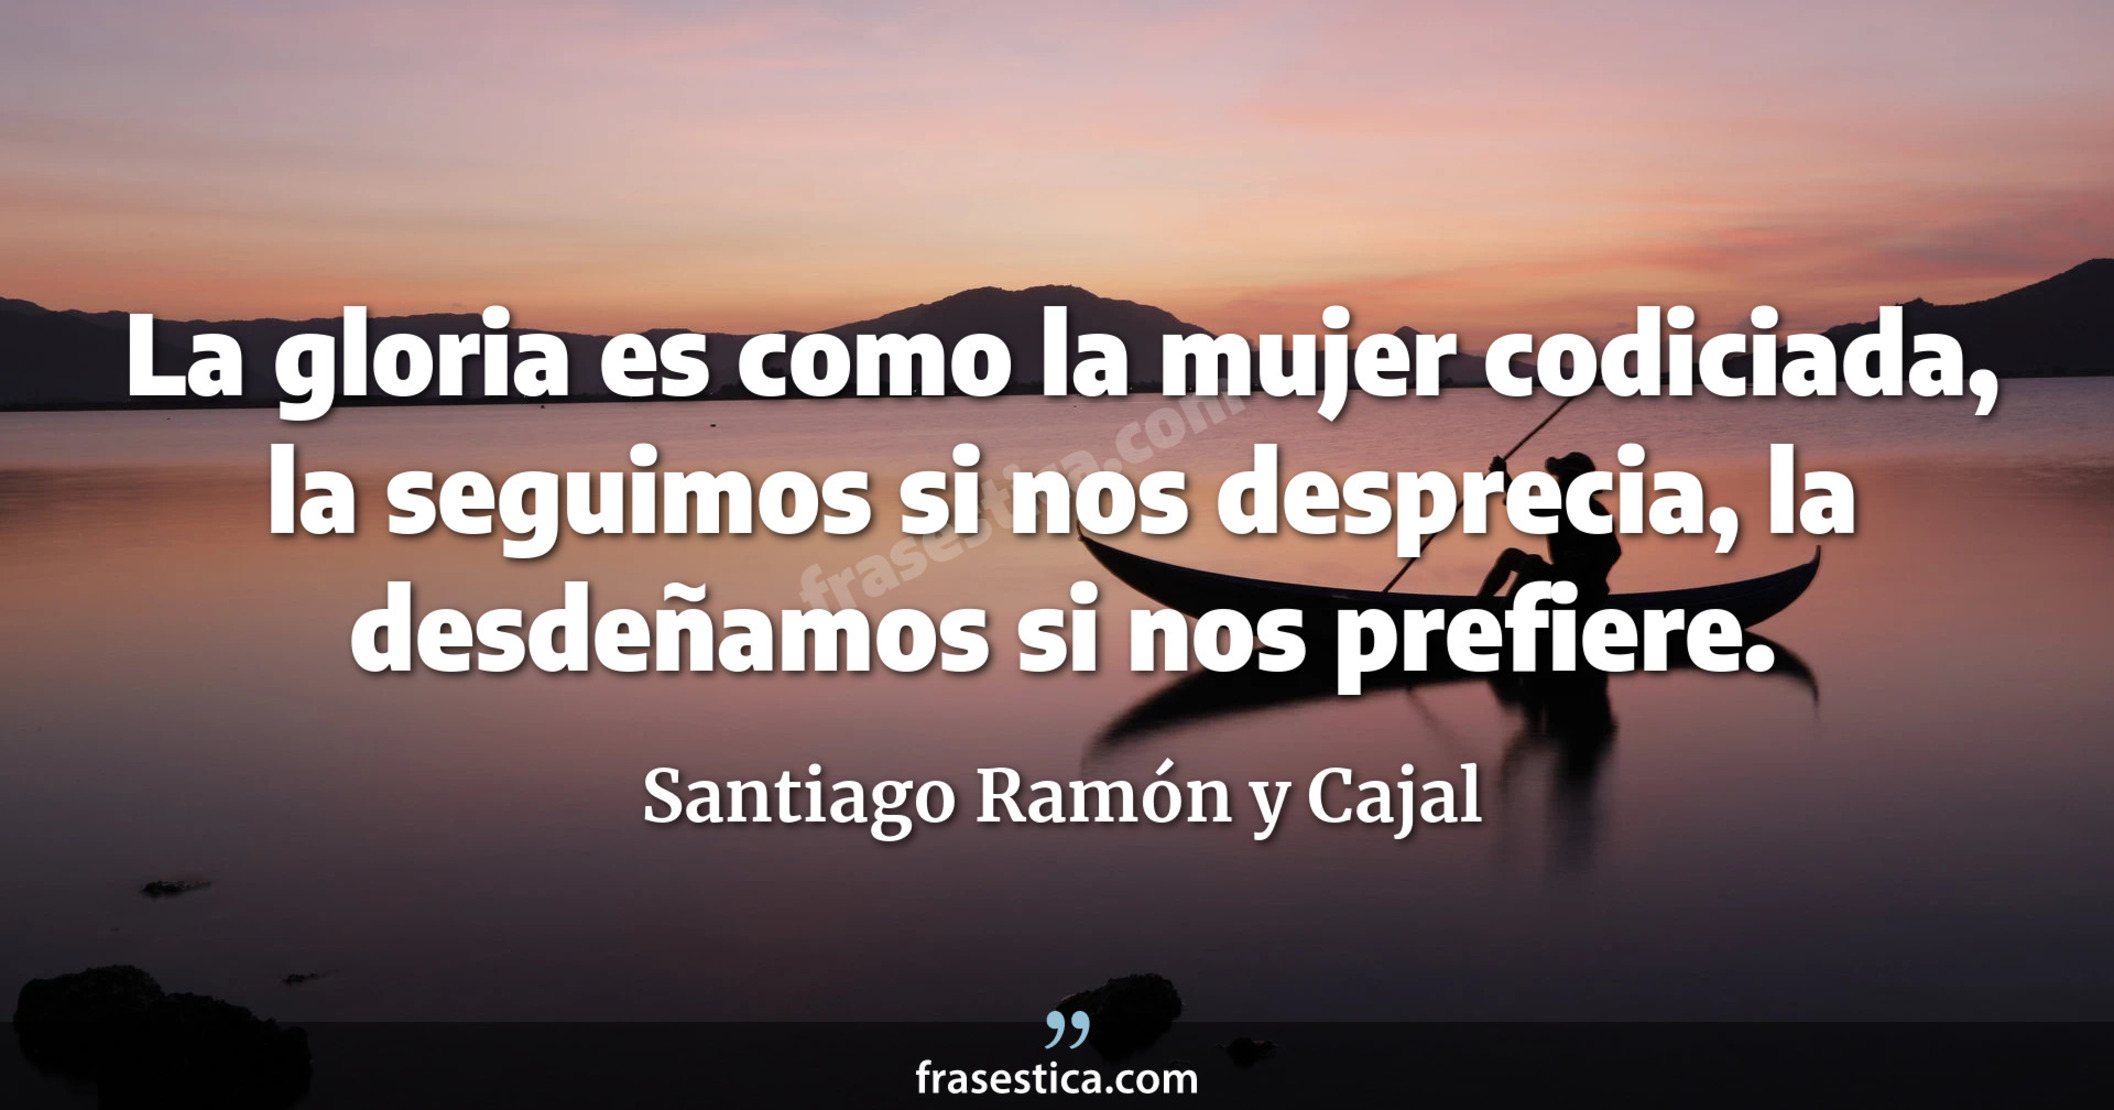 La gloria es como la mujer codiciada, la seguimos si nos desprecia, la desdeñamos si nos prefiere. - Santiago Ramón y Cajal